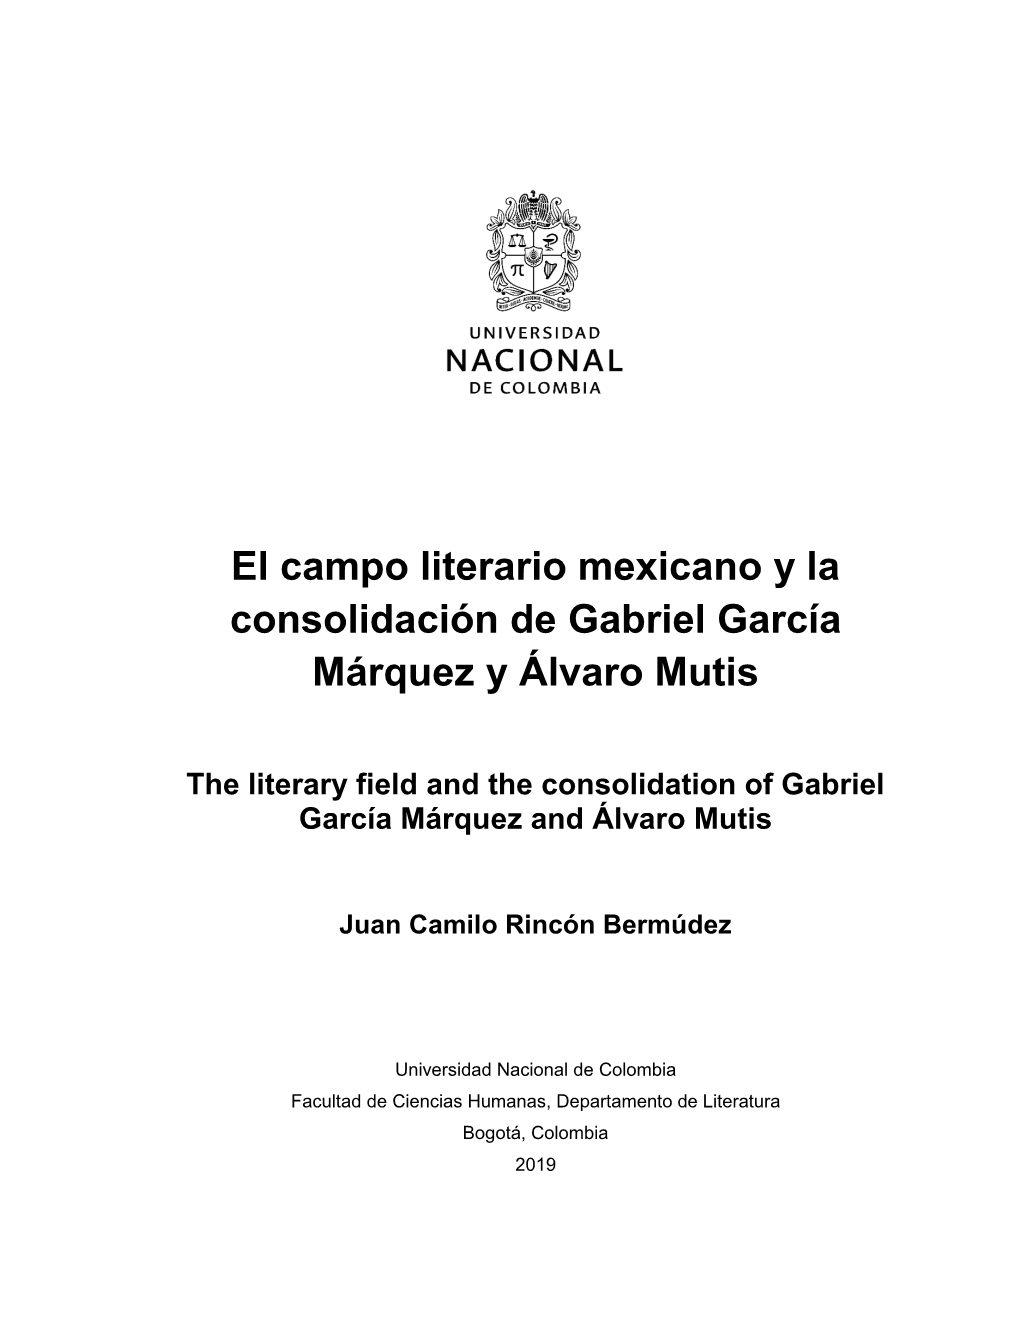 El Campo Literario Mexicano Y La Consolidación De Gabriel García Márquez Y Álvaro Mutis